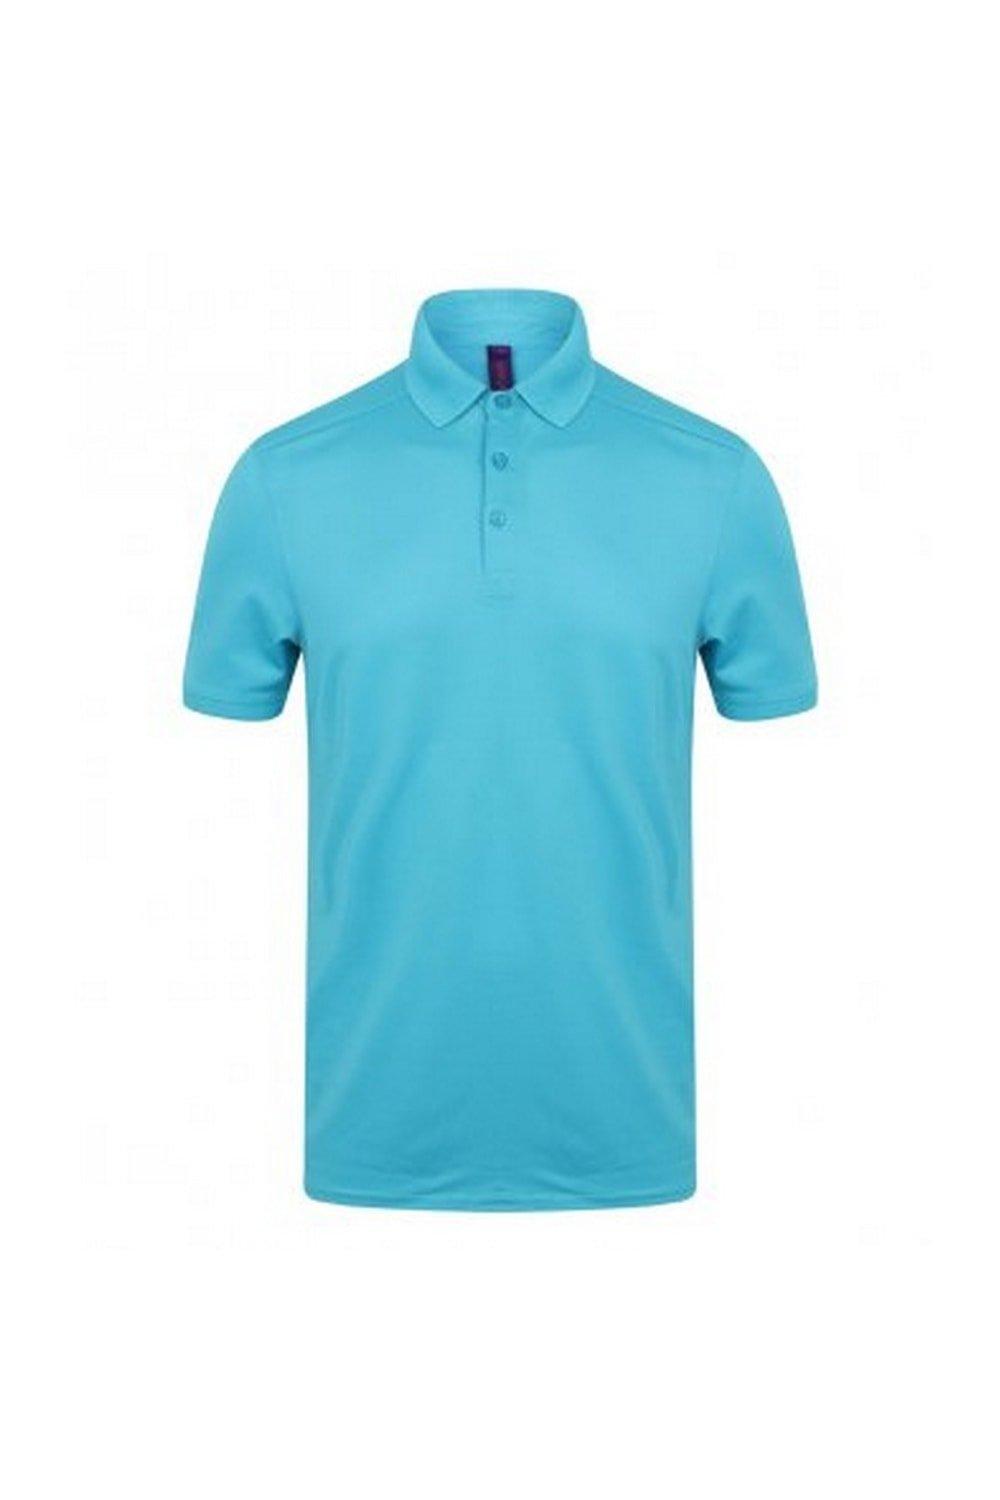 Рубашка поло из пике стрейч из микрофайна Henbury, синий рубашка поло coolplus из пике henbury зеленый